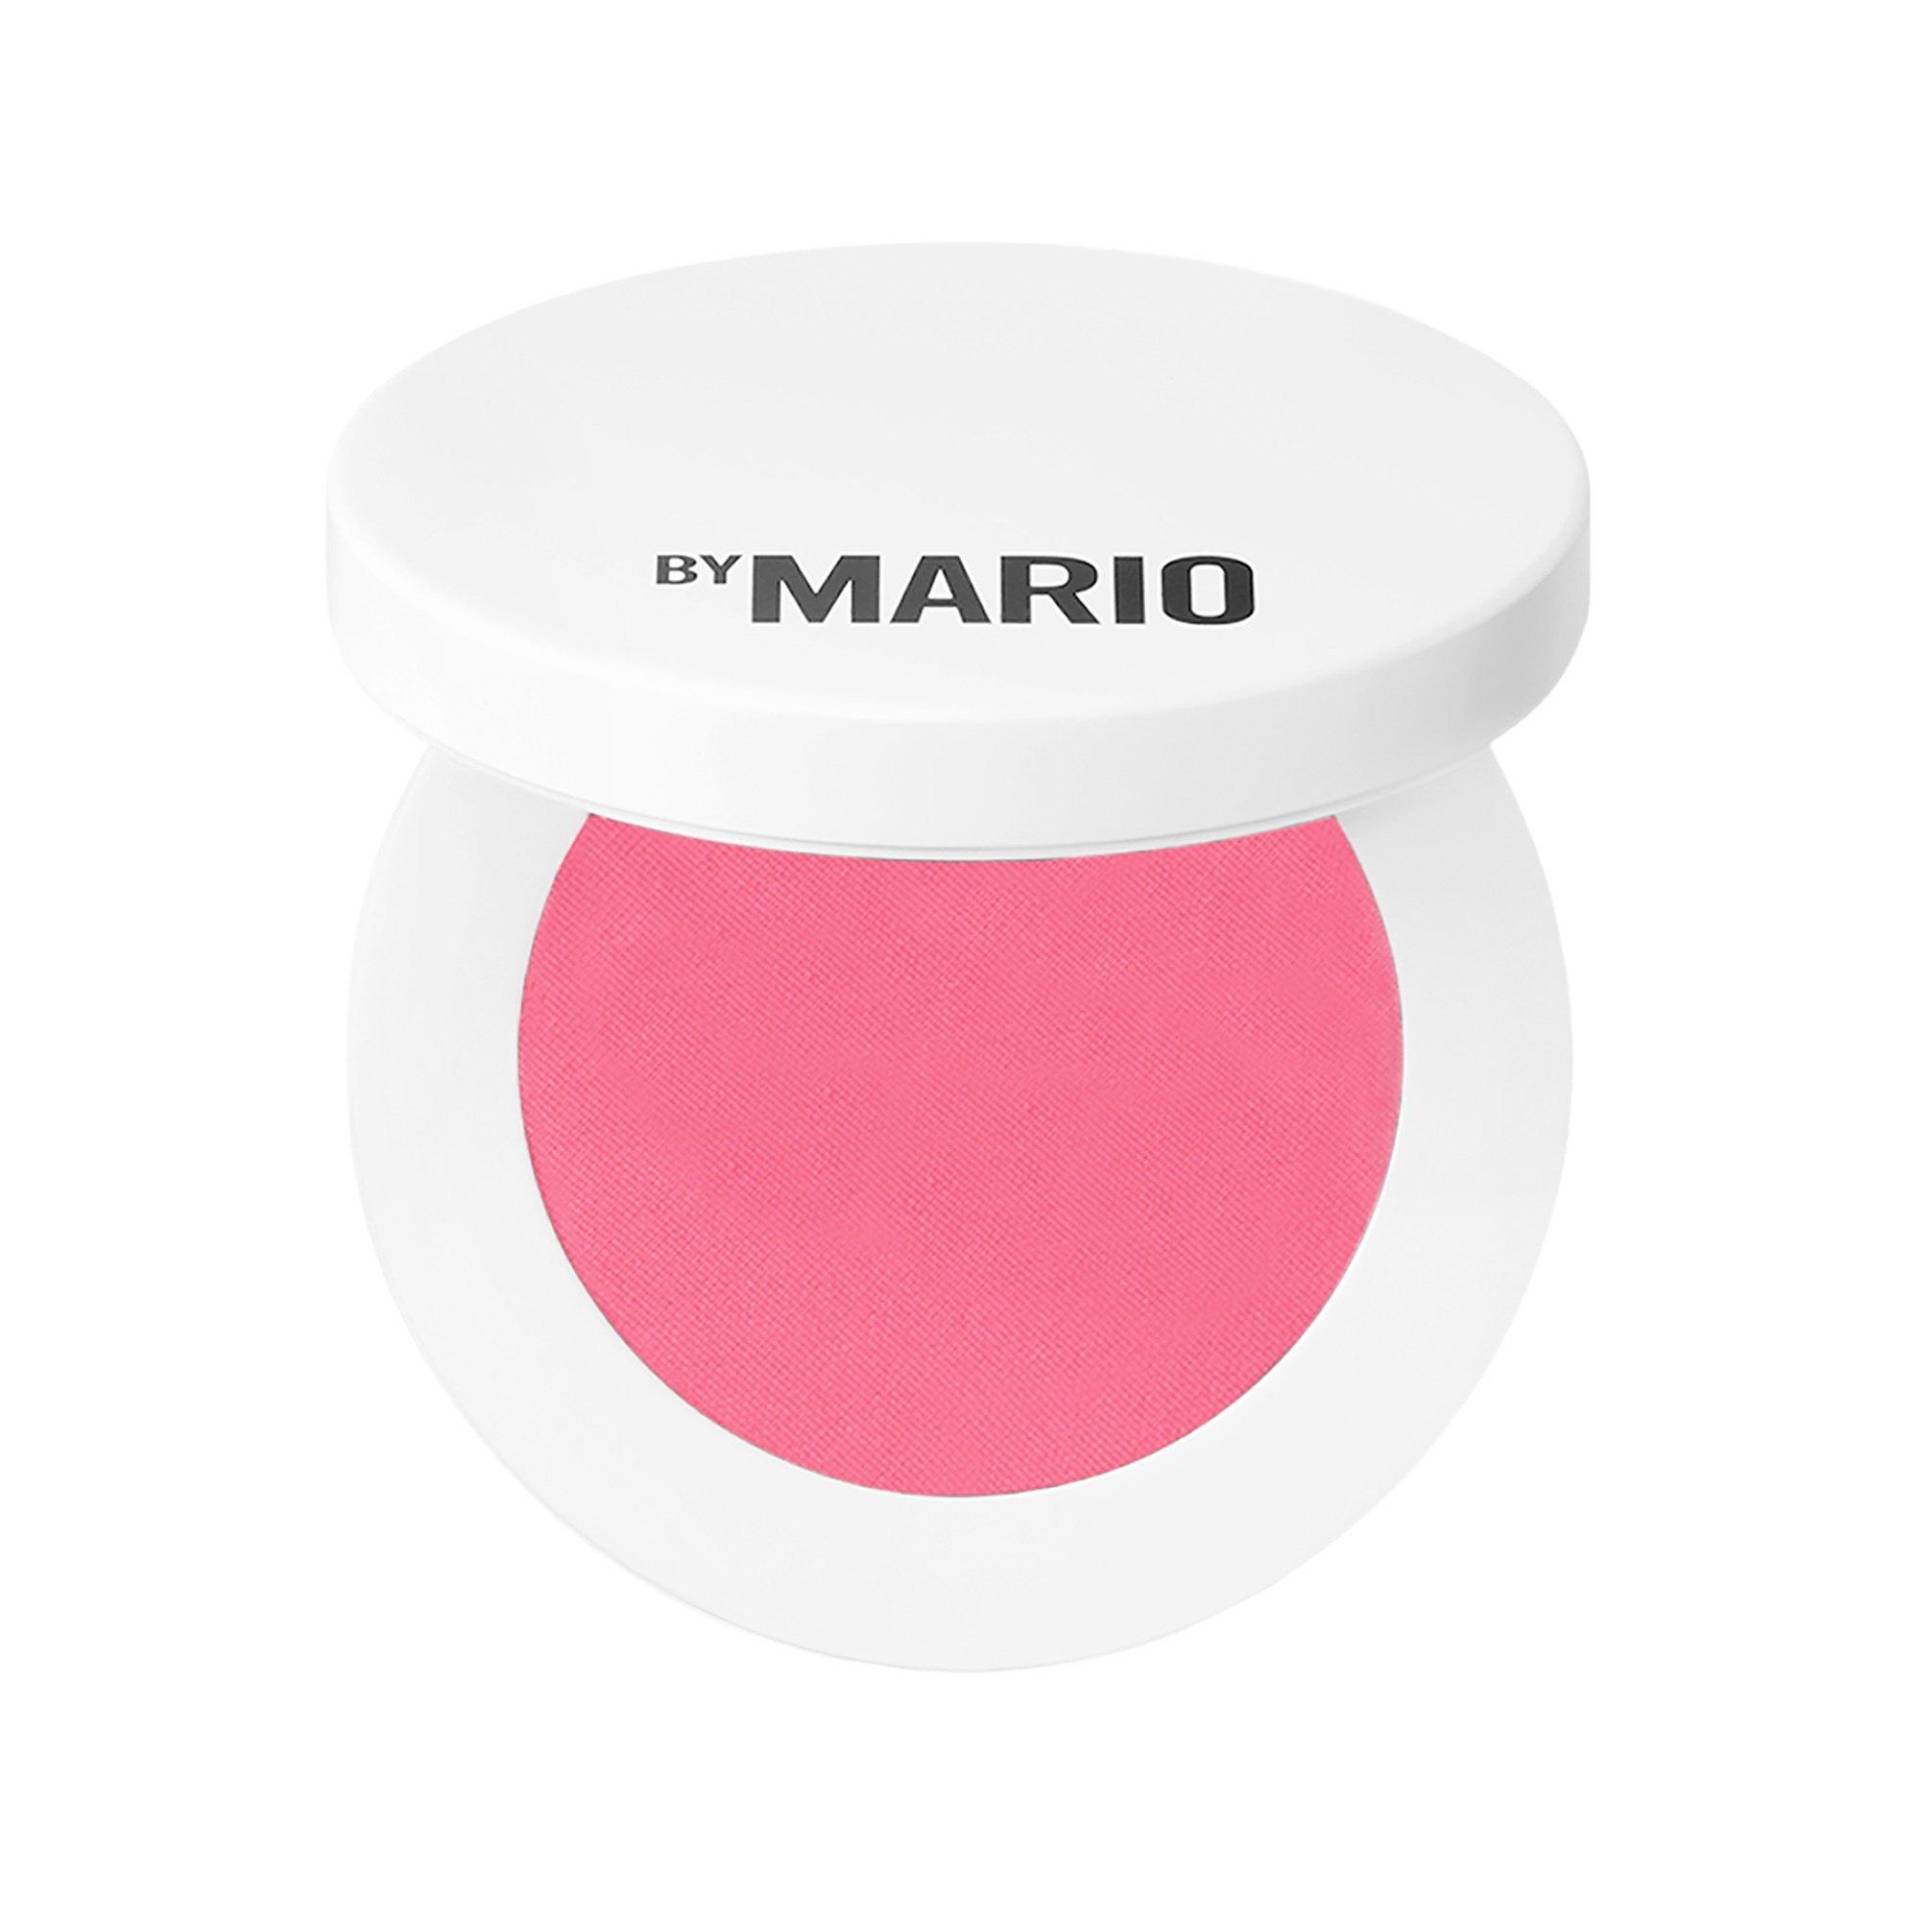 Soft Pop Powder Blush - Puderrouge Damen Poppy Pink 4.4g von MAKEUP BY MARIO